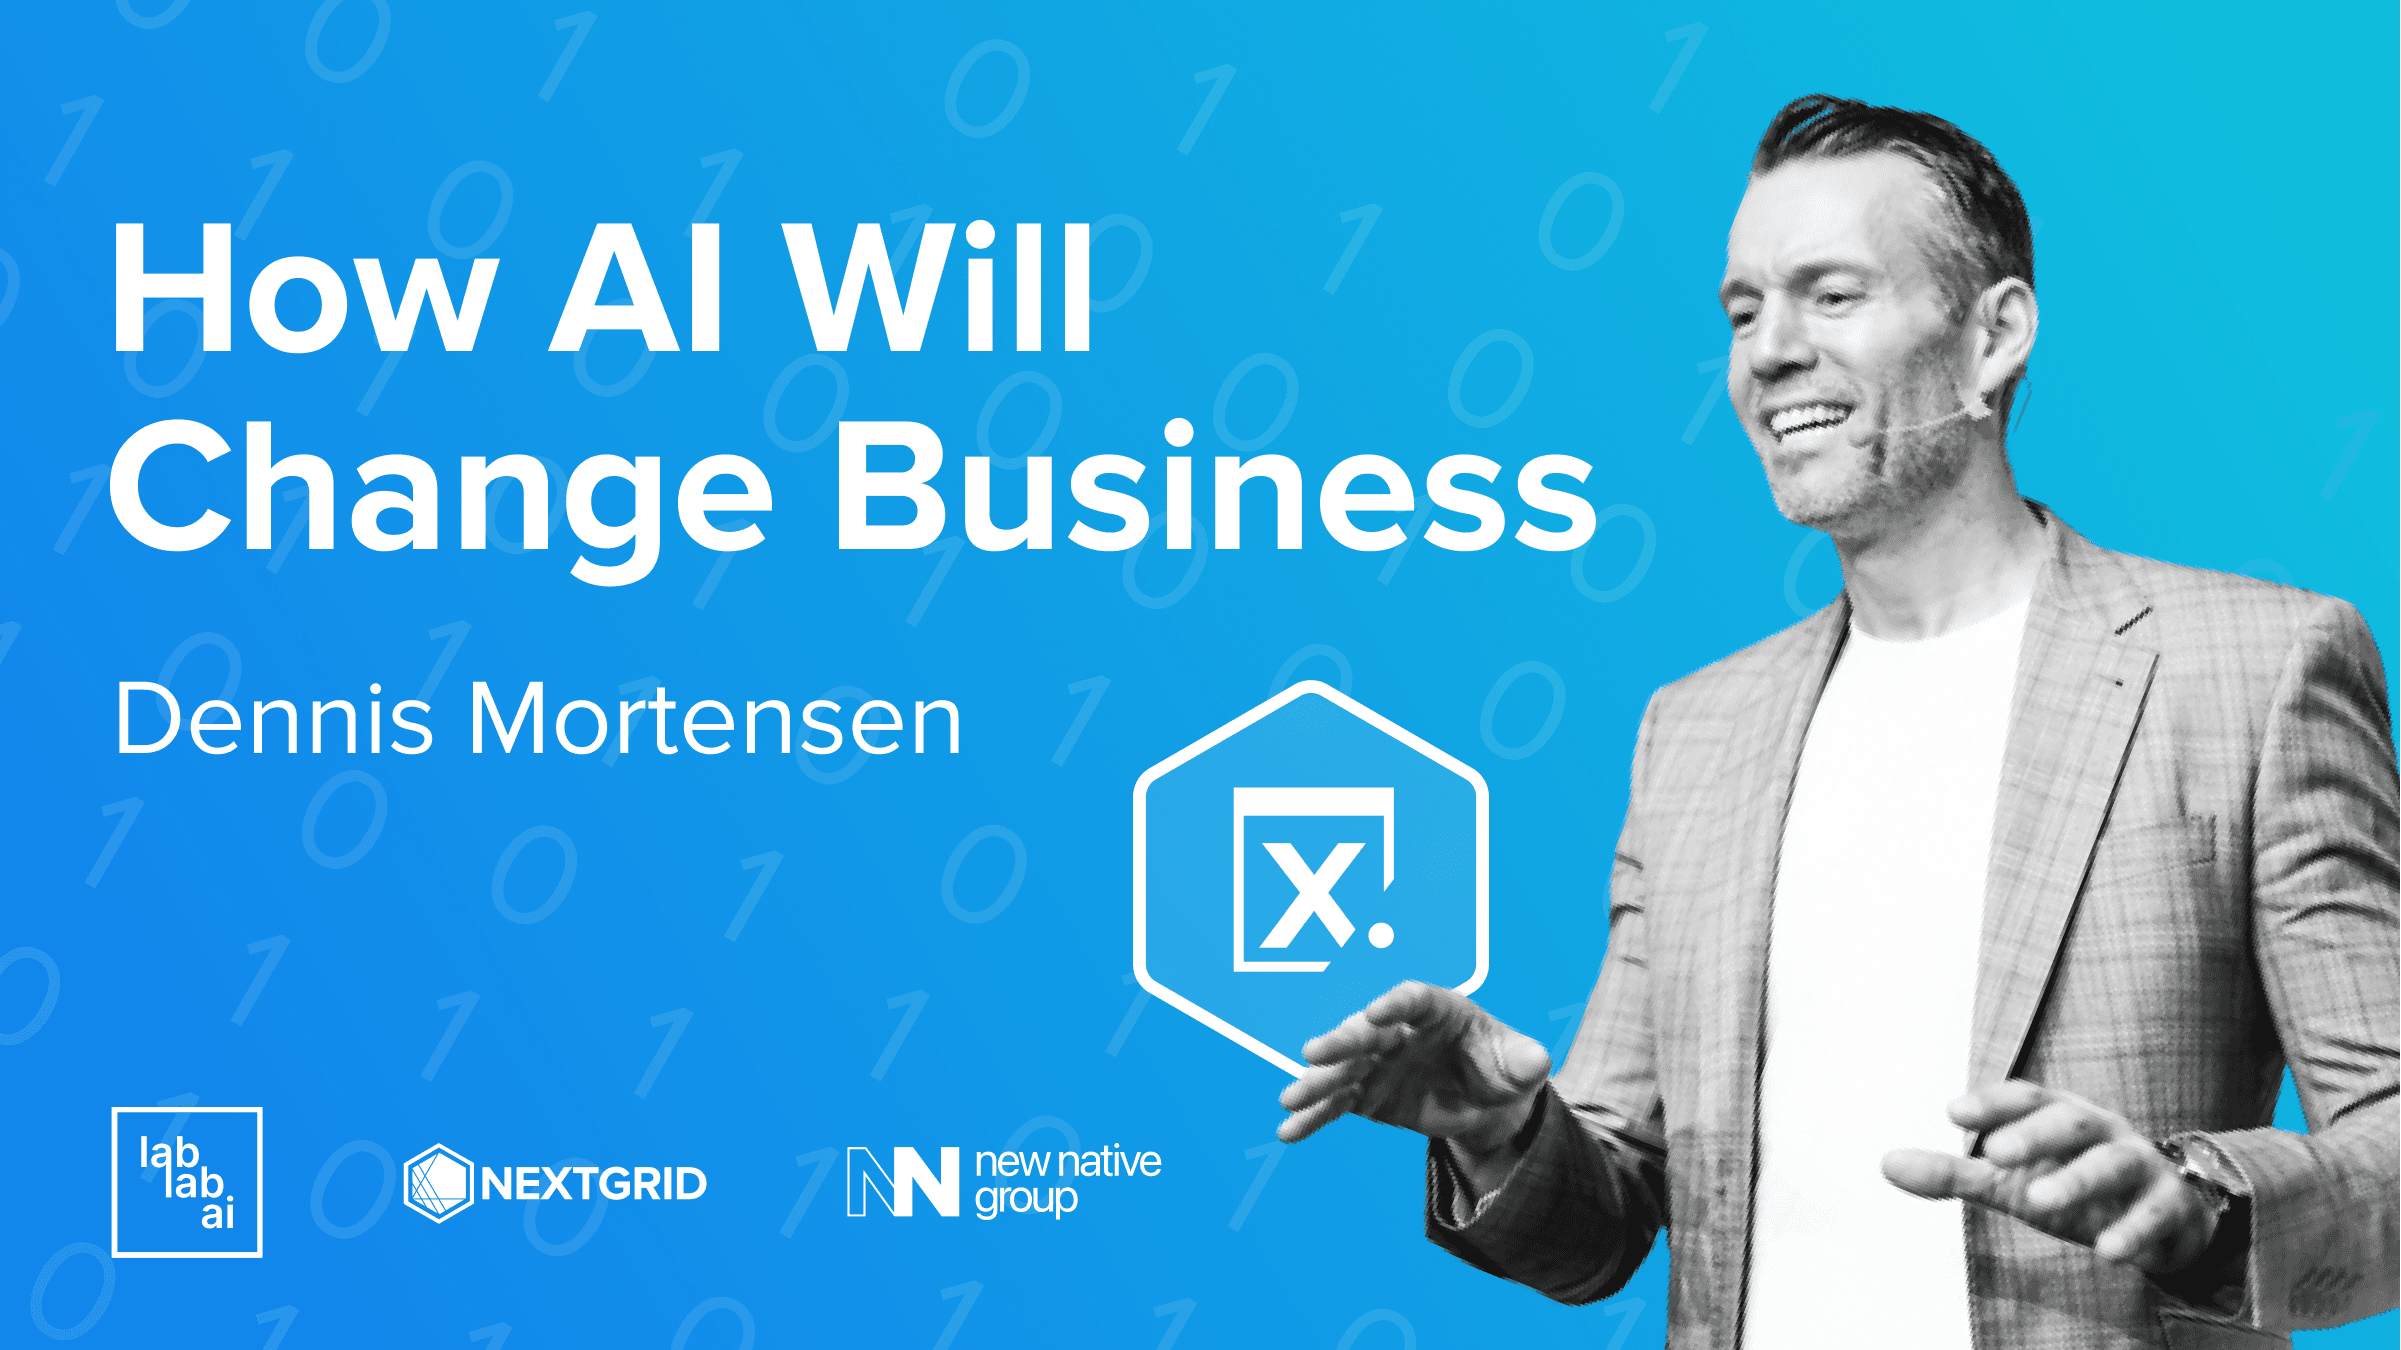 Dennis Mortensen: How AI Will Change Business